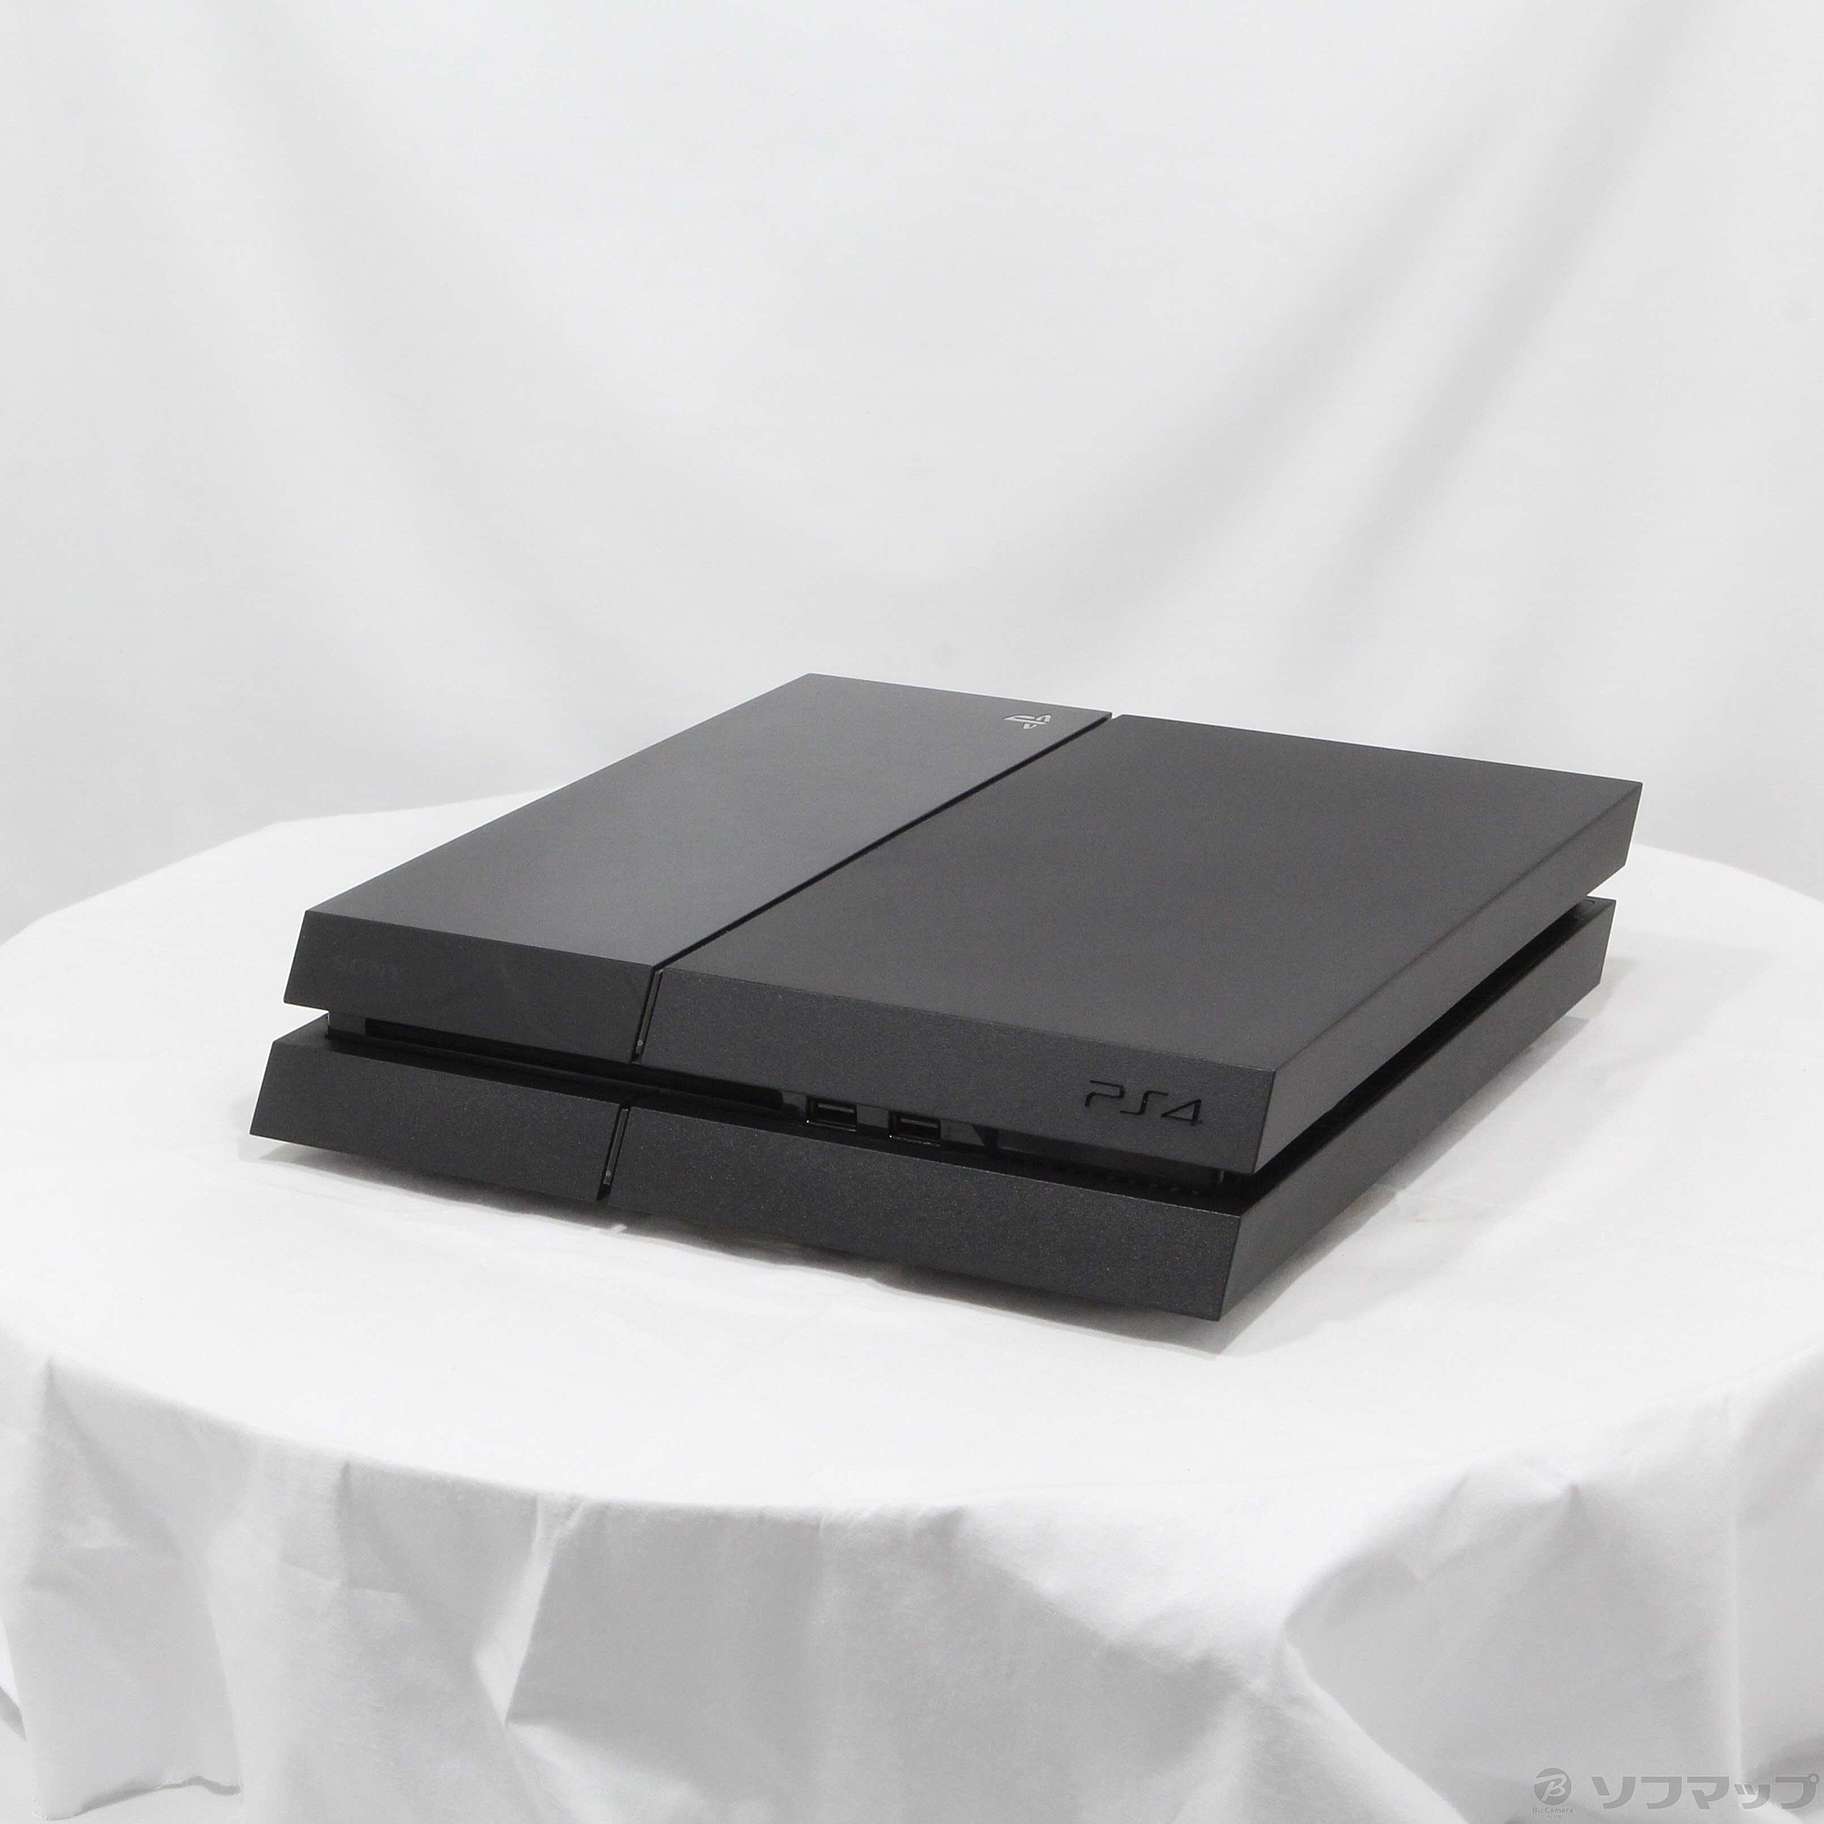 中古品〕 PlayStation 4 First Limited Pack with PlayStation Camera